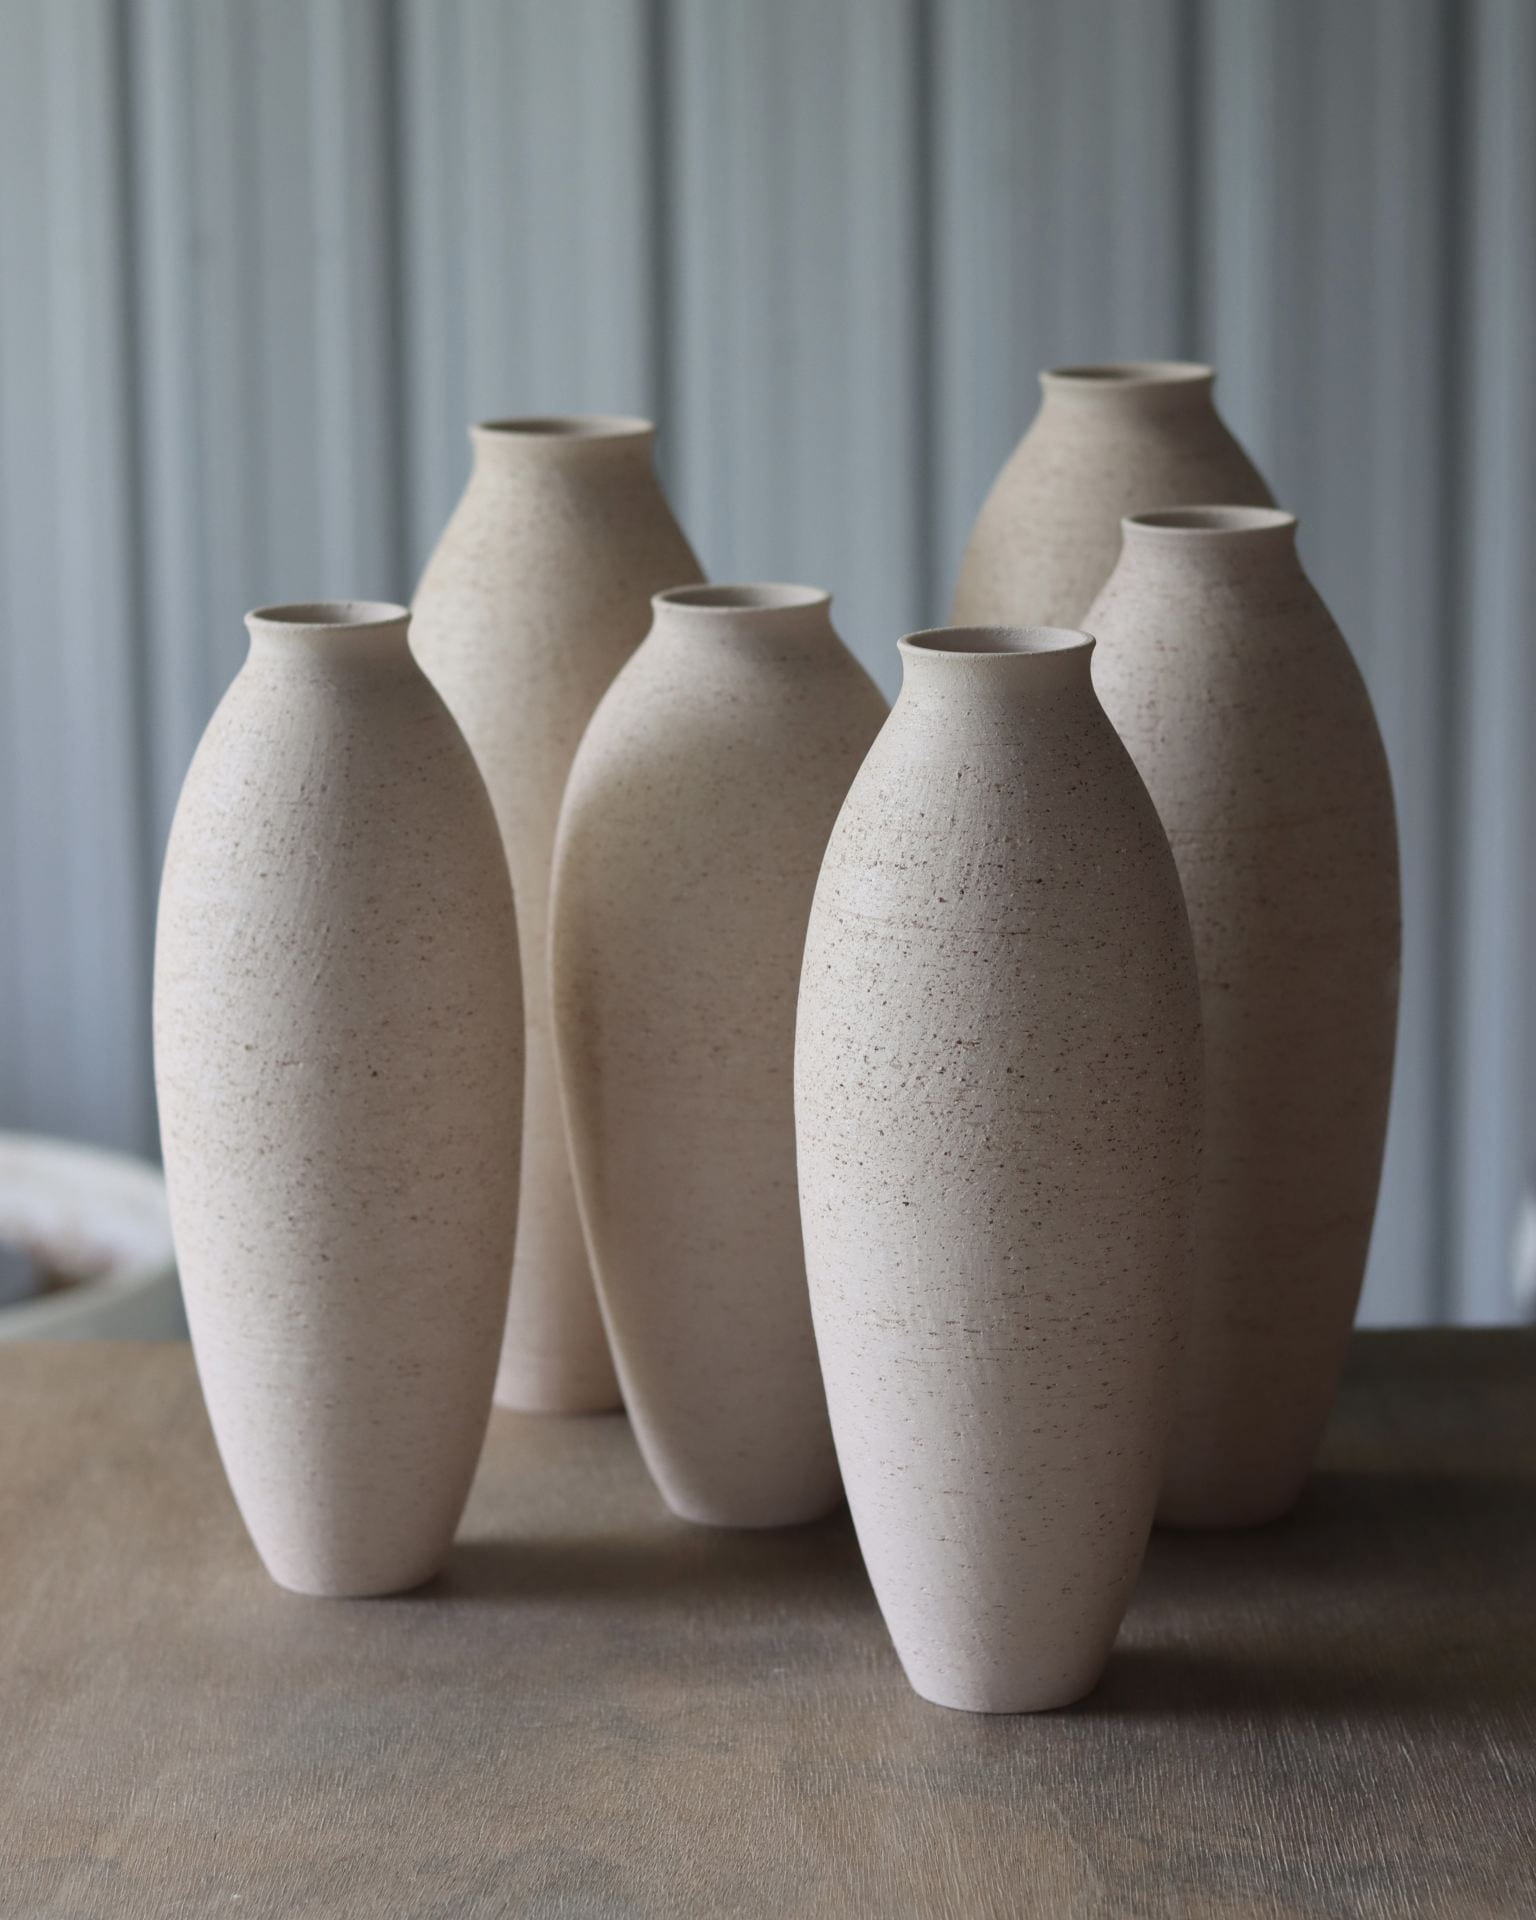 Group of vases in feeneys fine blend